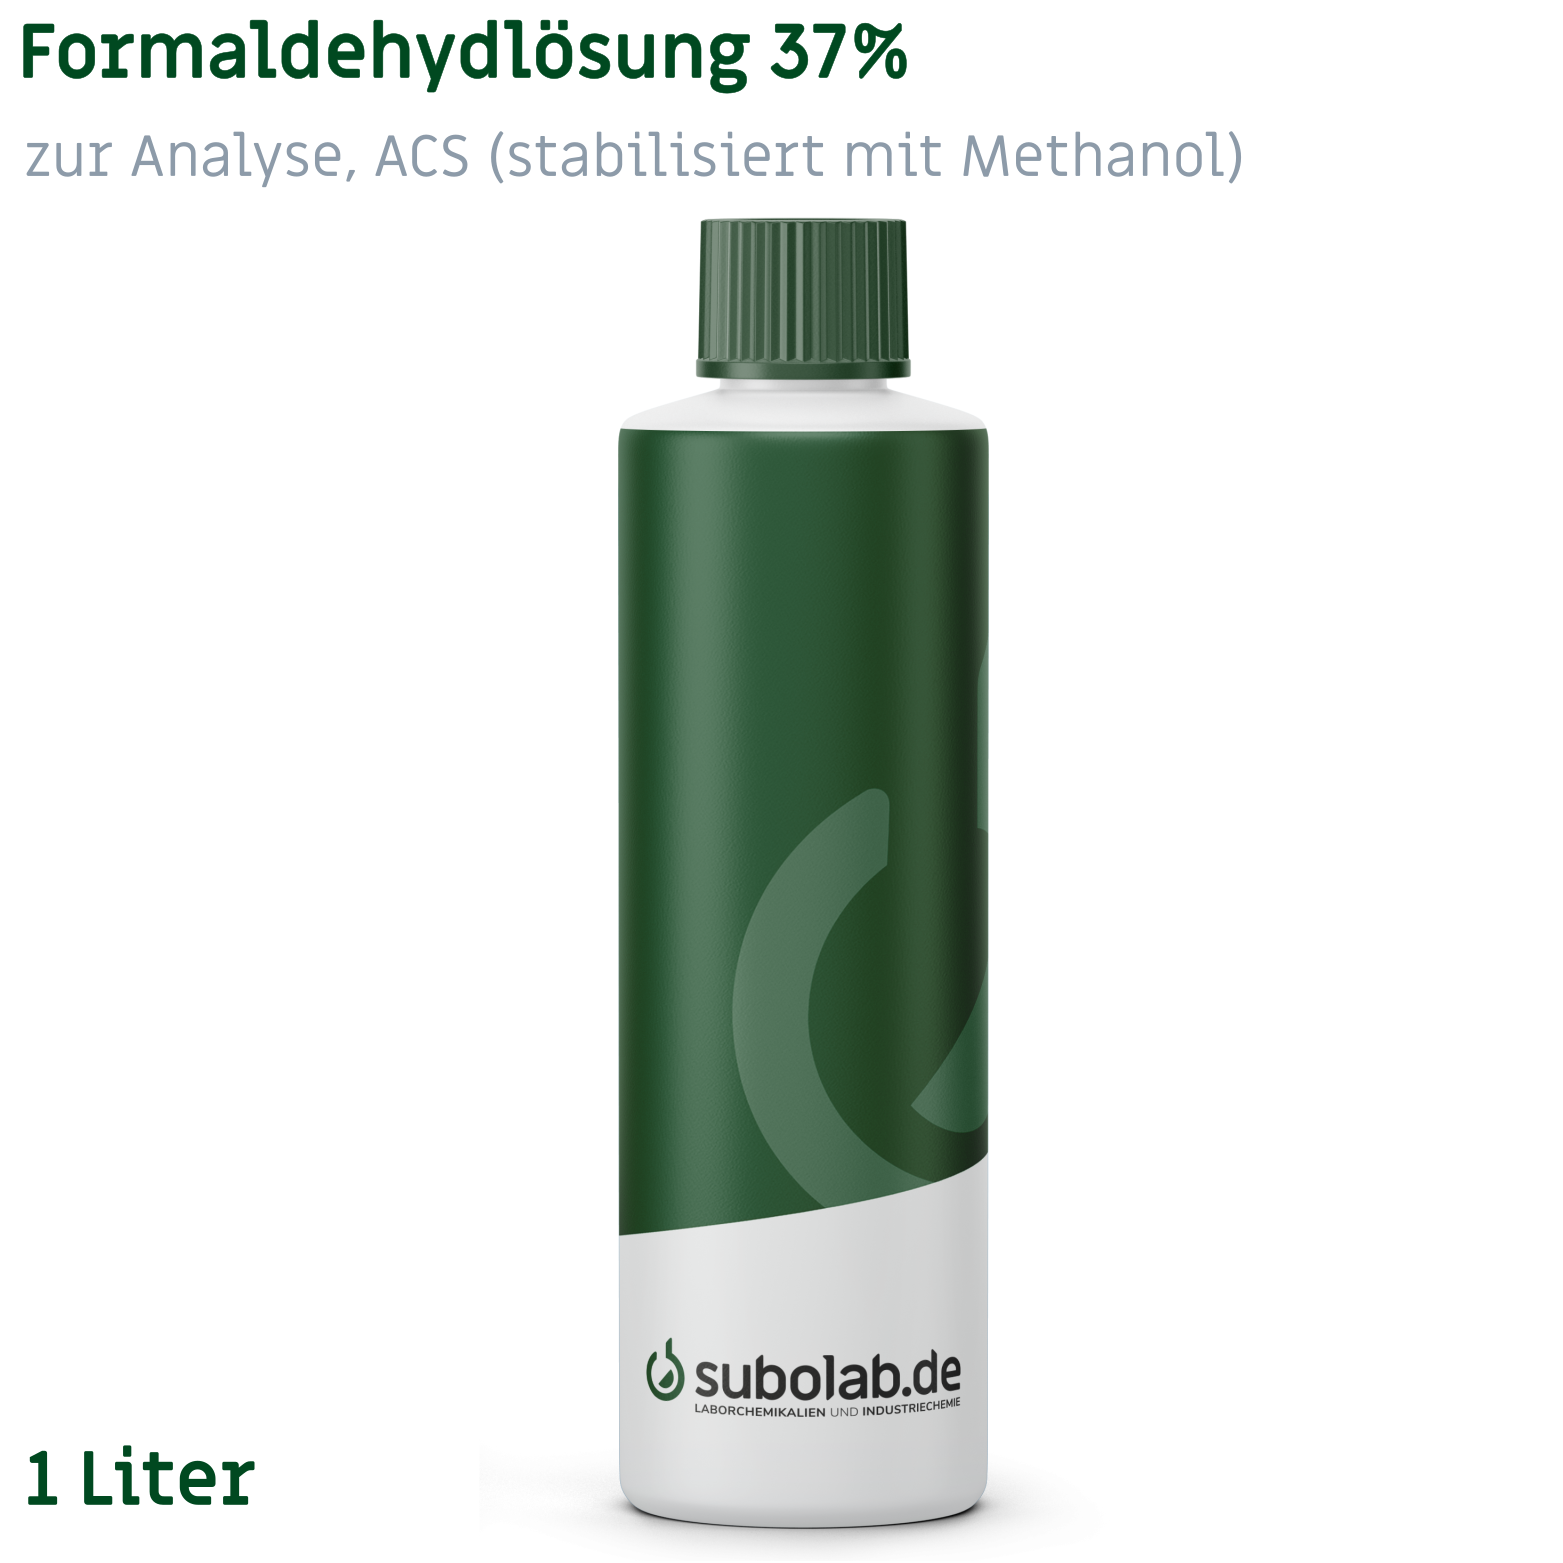 Bild von Formaldehydlösung 37% zur Analyse, ACS (stabilisiert mit Methanol) (1 Liter)